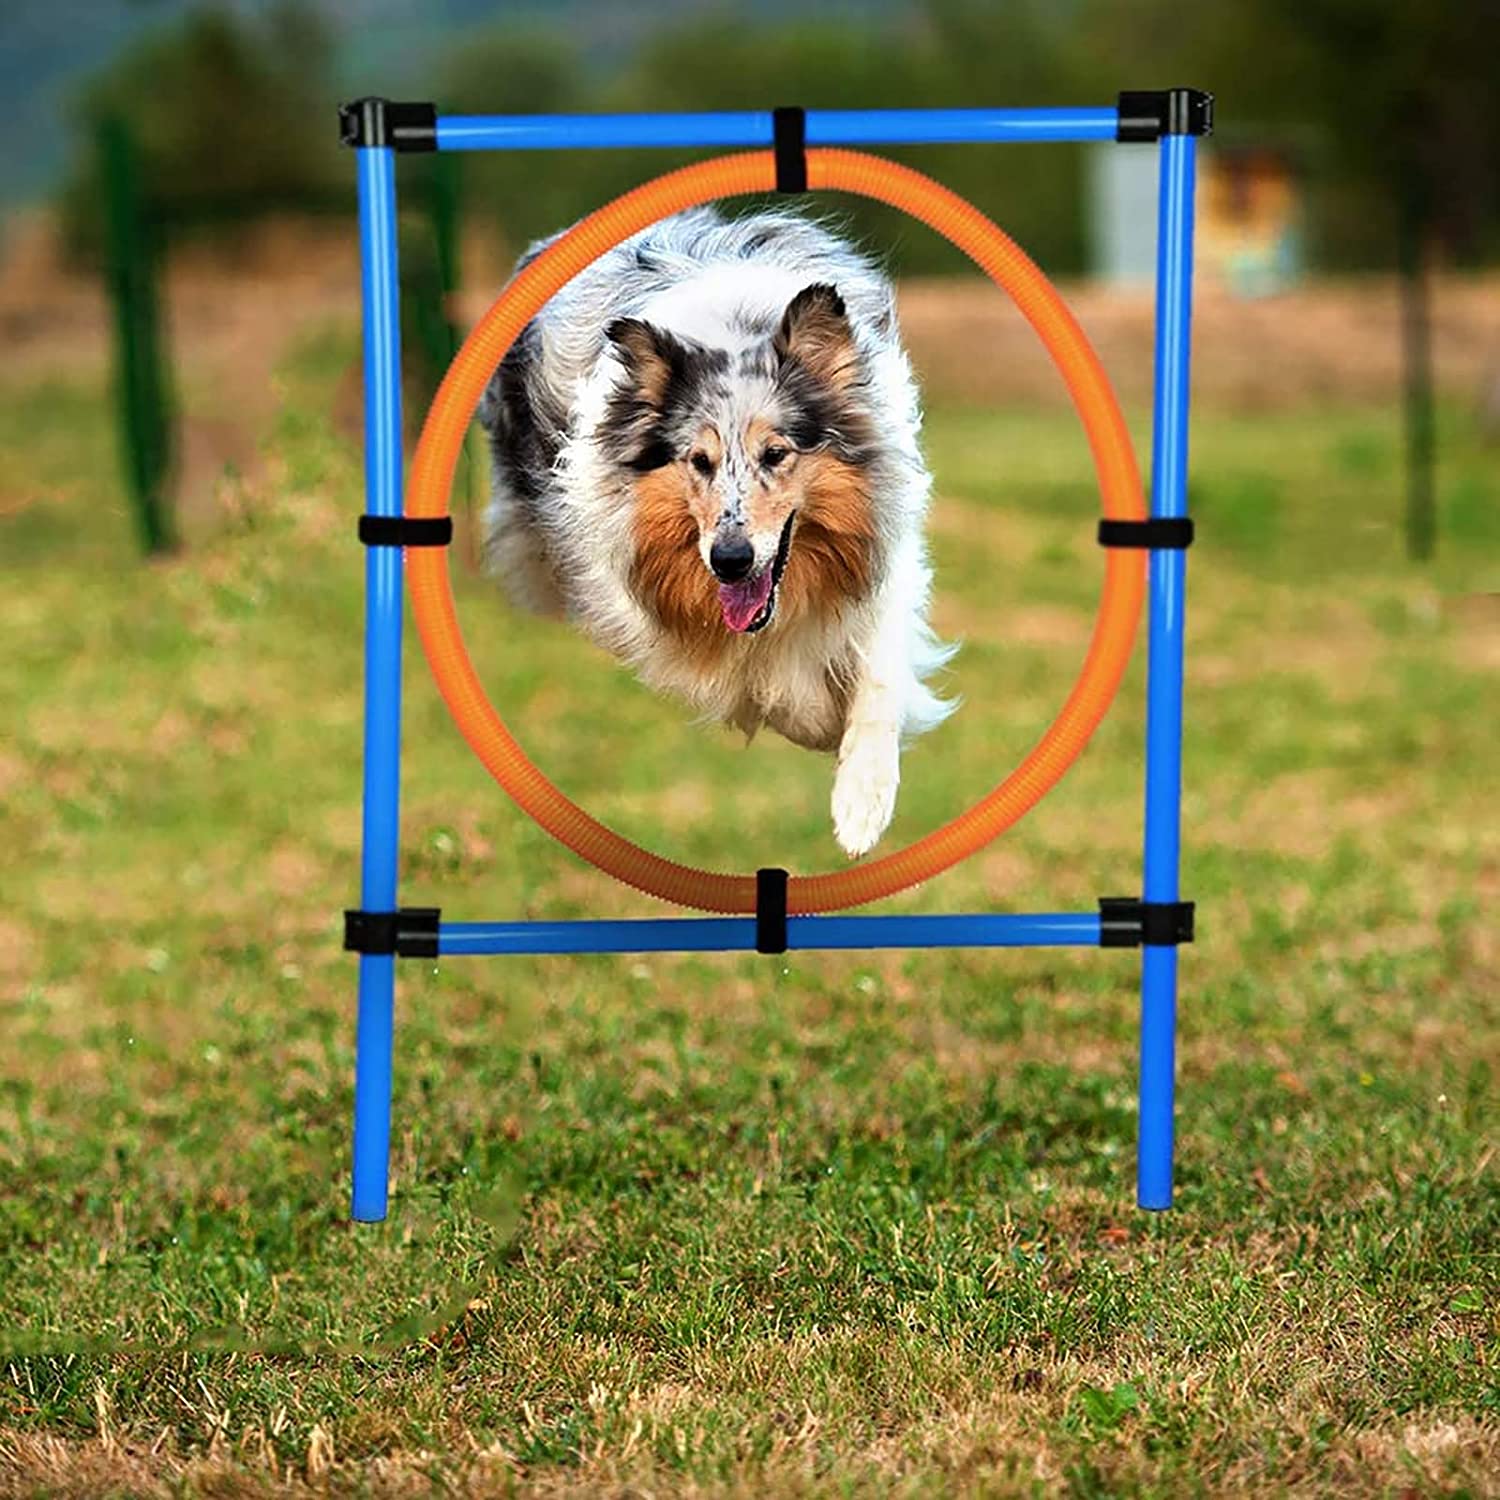 ポールの敏捷性装置の犬の高さは100cm +金属杭は12cm（ポールの直径は3cm）であり、ドリルリングの直径は57cmです。 犬の怪我を防ぐため、高さはプラスチック素材で自由に調整できます。 持ち運びや保管が簡単な取り外し可能な敏捷性機器犬は、ペットの心身の健康に役立ちます。 退屈な感情を解消して、犬が商品を傷つけたり、孤独な不安やその他の悪い習慣を防いだりするのを防ぎます。 犬の体を動かし、犬の治療と訓練を行い、肥満によって引き起こされる病気を減らし、飼い主とペットの関係を深めます。